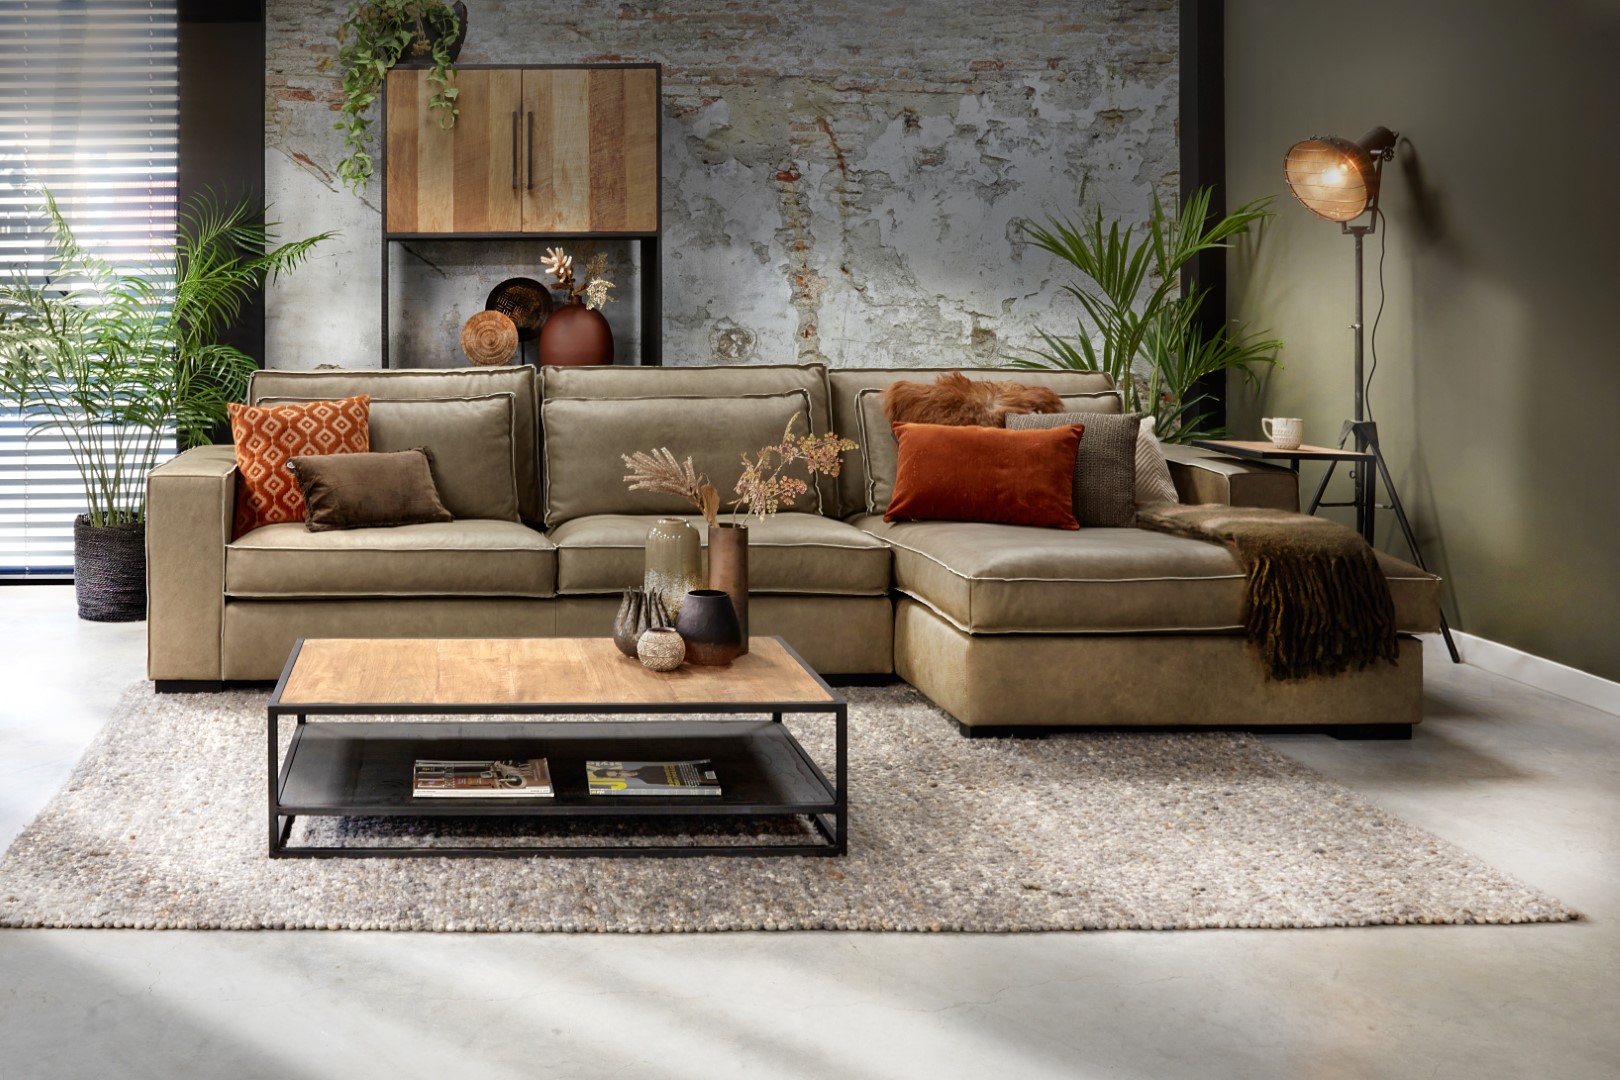 أريكة خضراء من Room108 بتصميم داخلي رائع مع وسائد زخرفية برتقالية